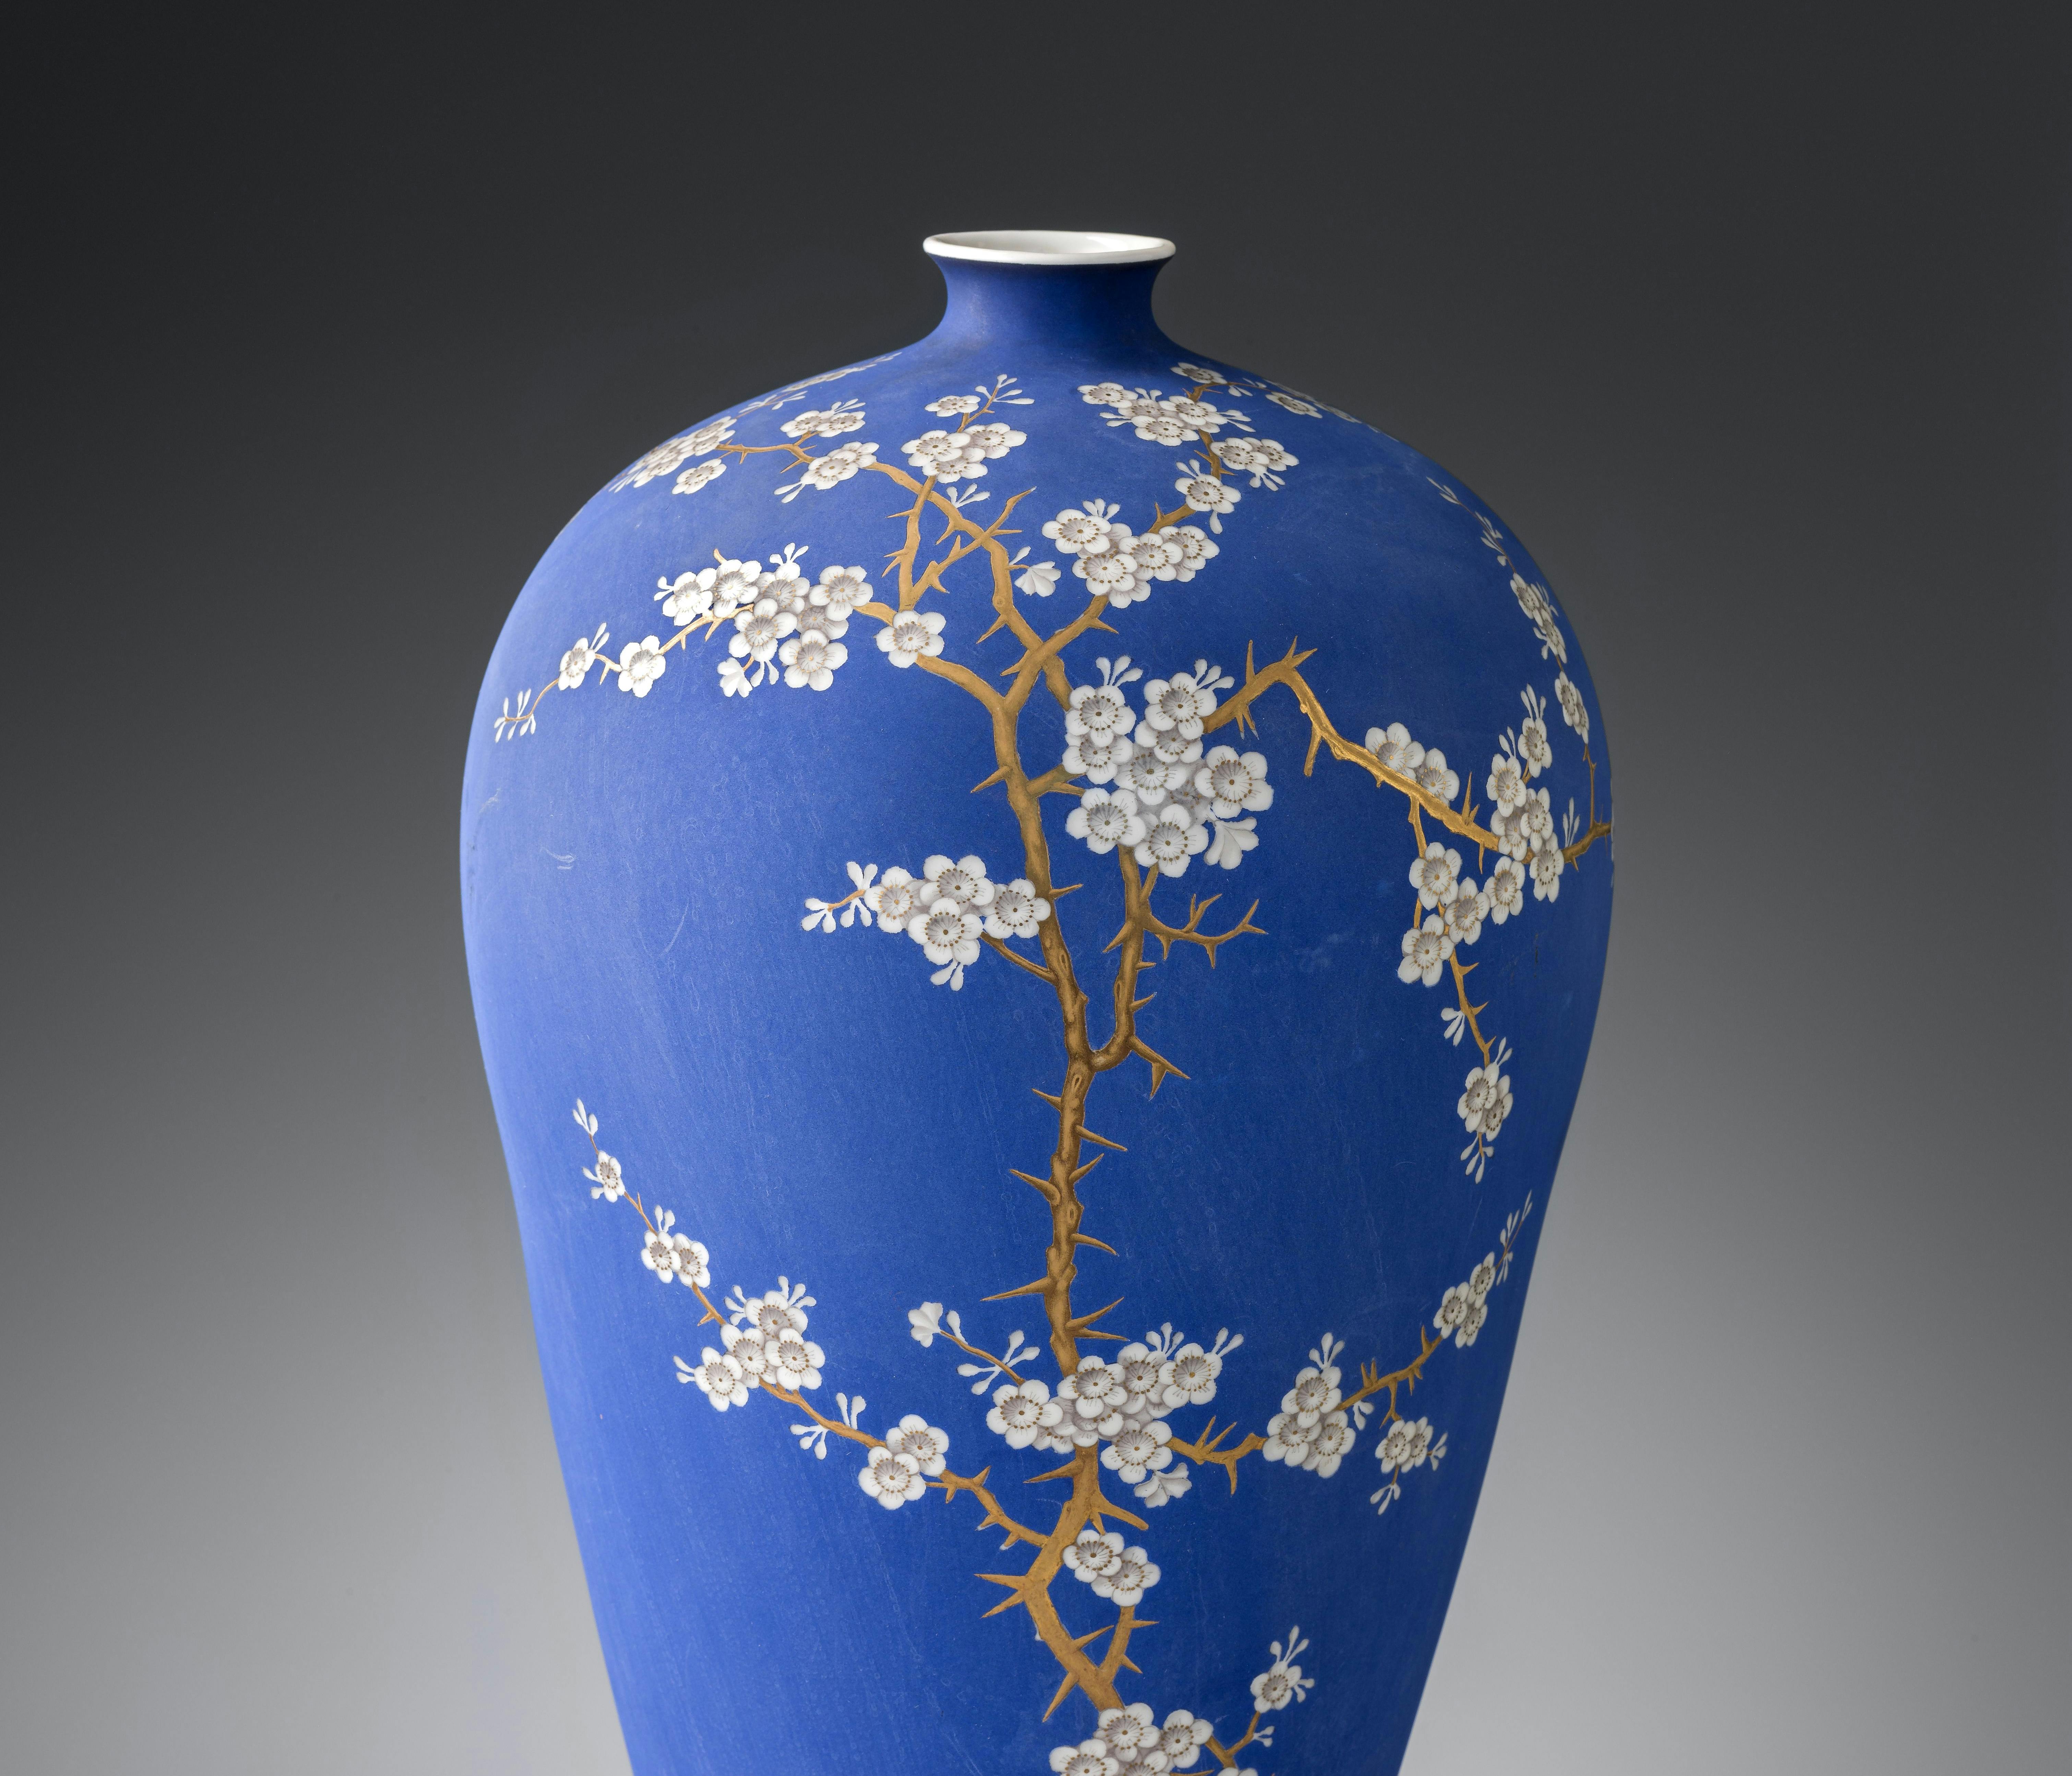 Vaso dipinto di blu decorato con rami e fiori di biancospino